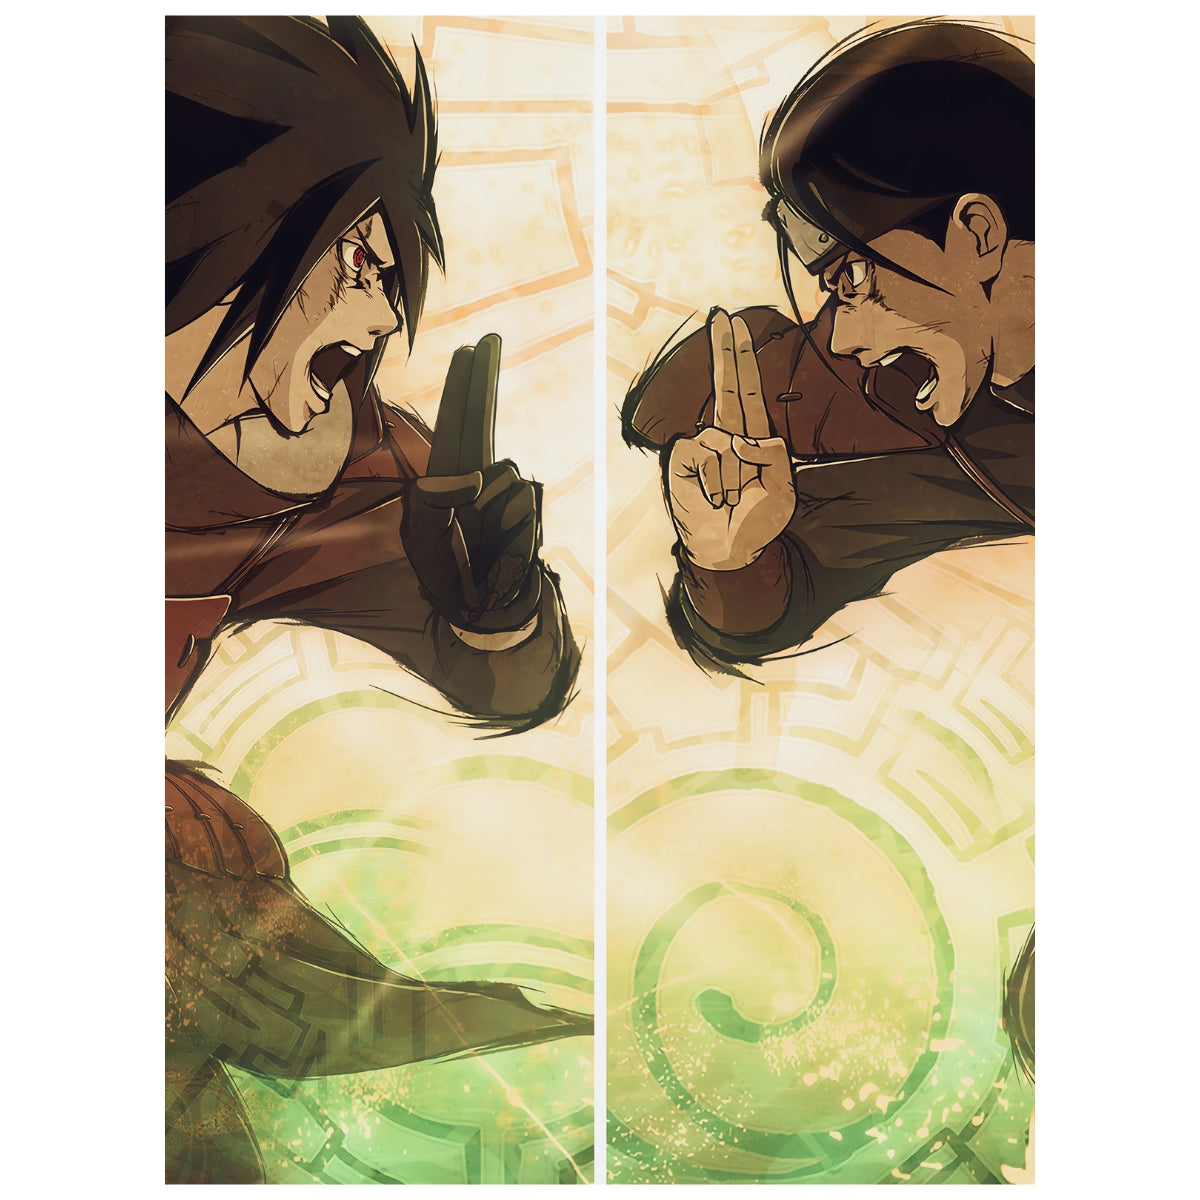 Naruto Shippuden: Madara vs Hashirama - Anime Painting Set